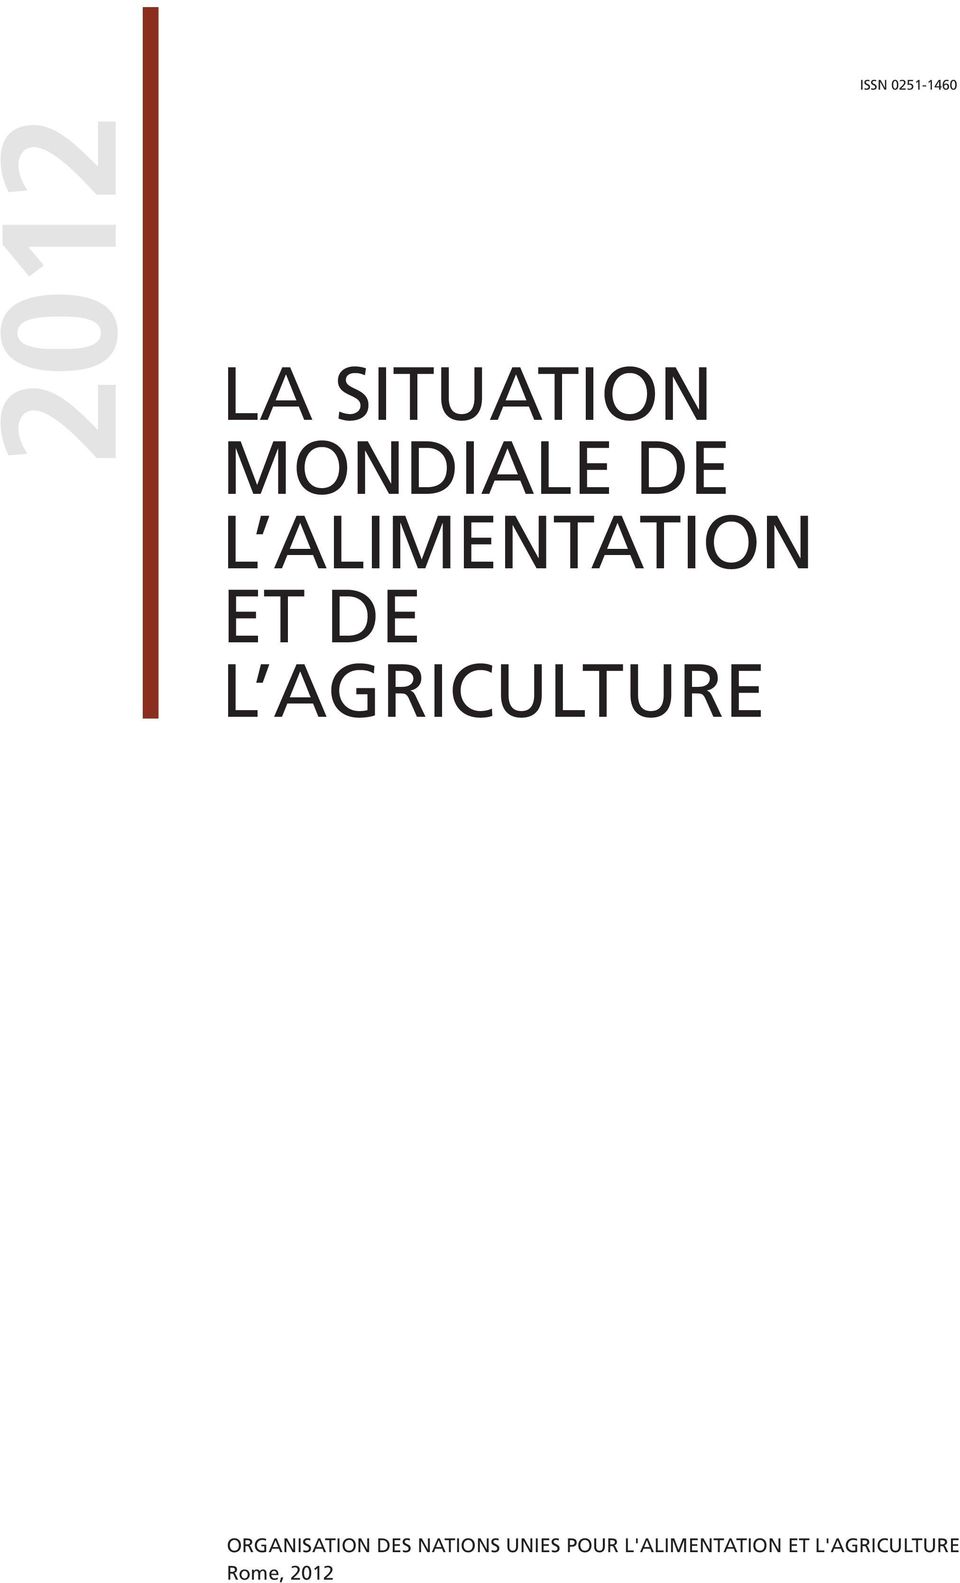 AGRICULTURE ORGANISATION DES NATIONS